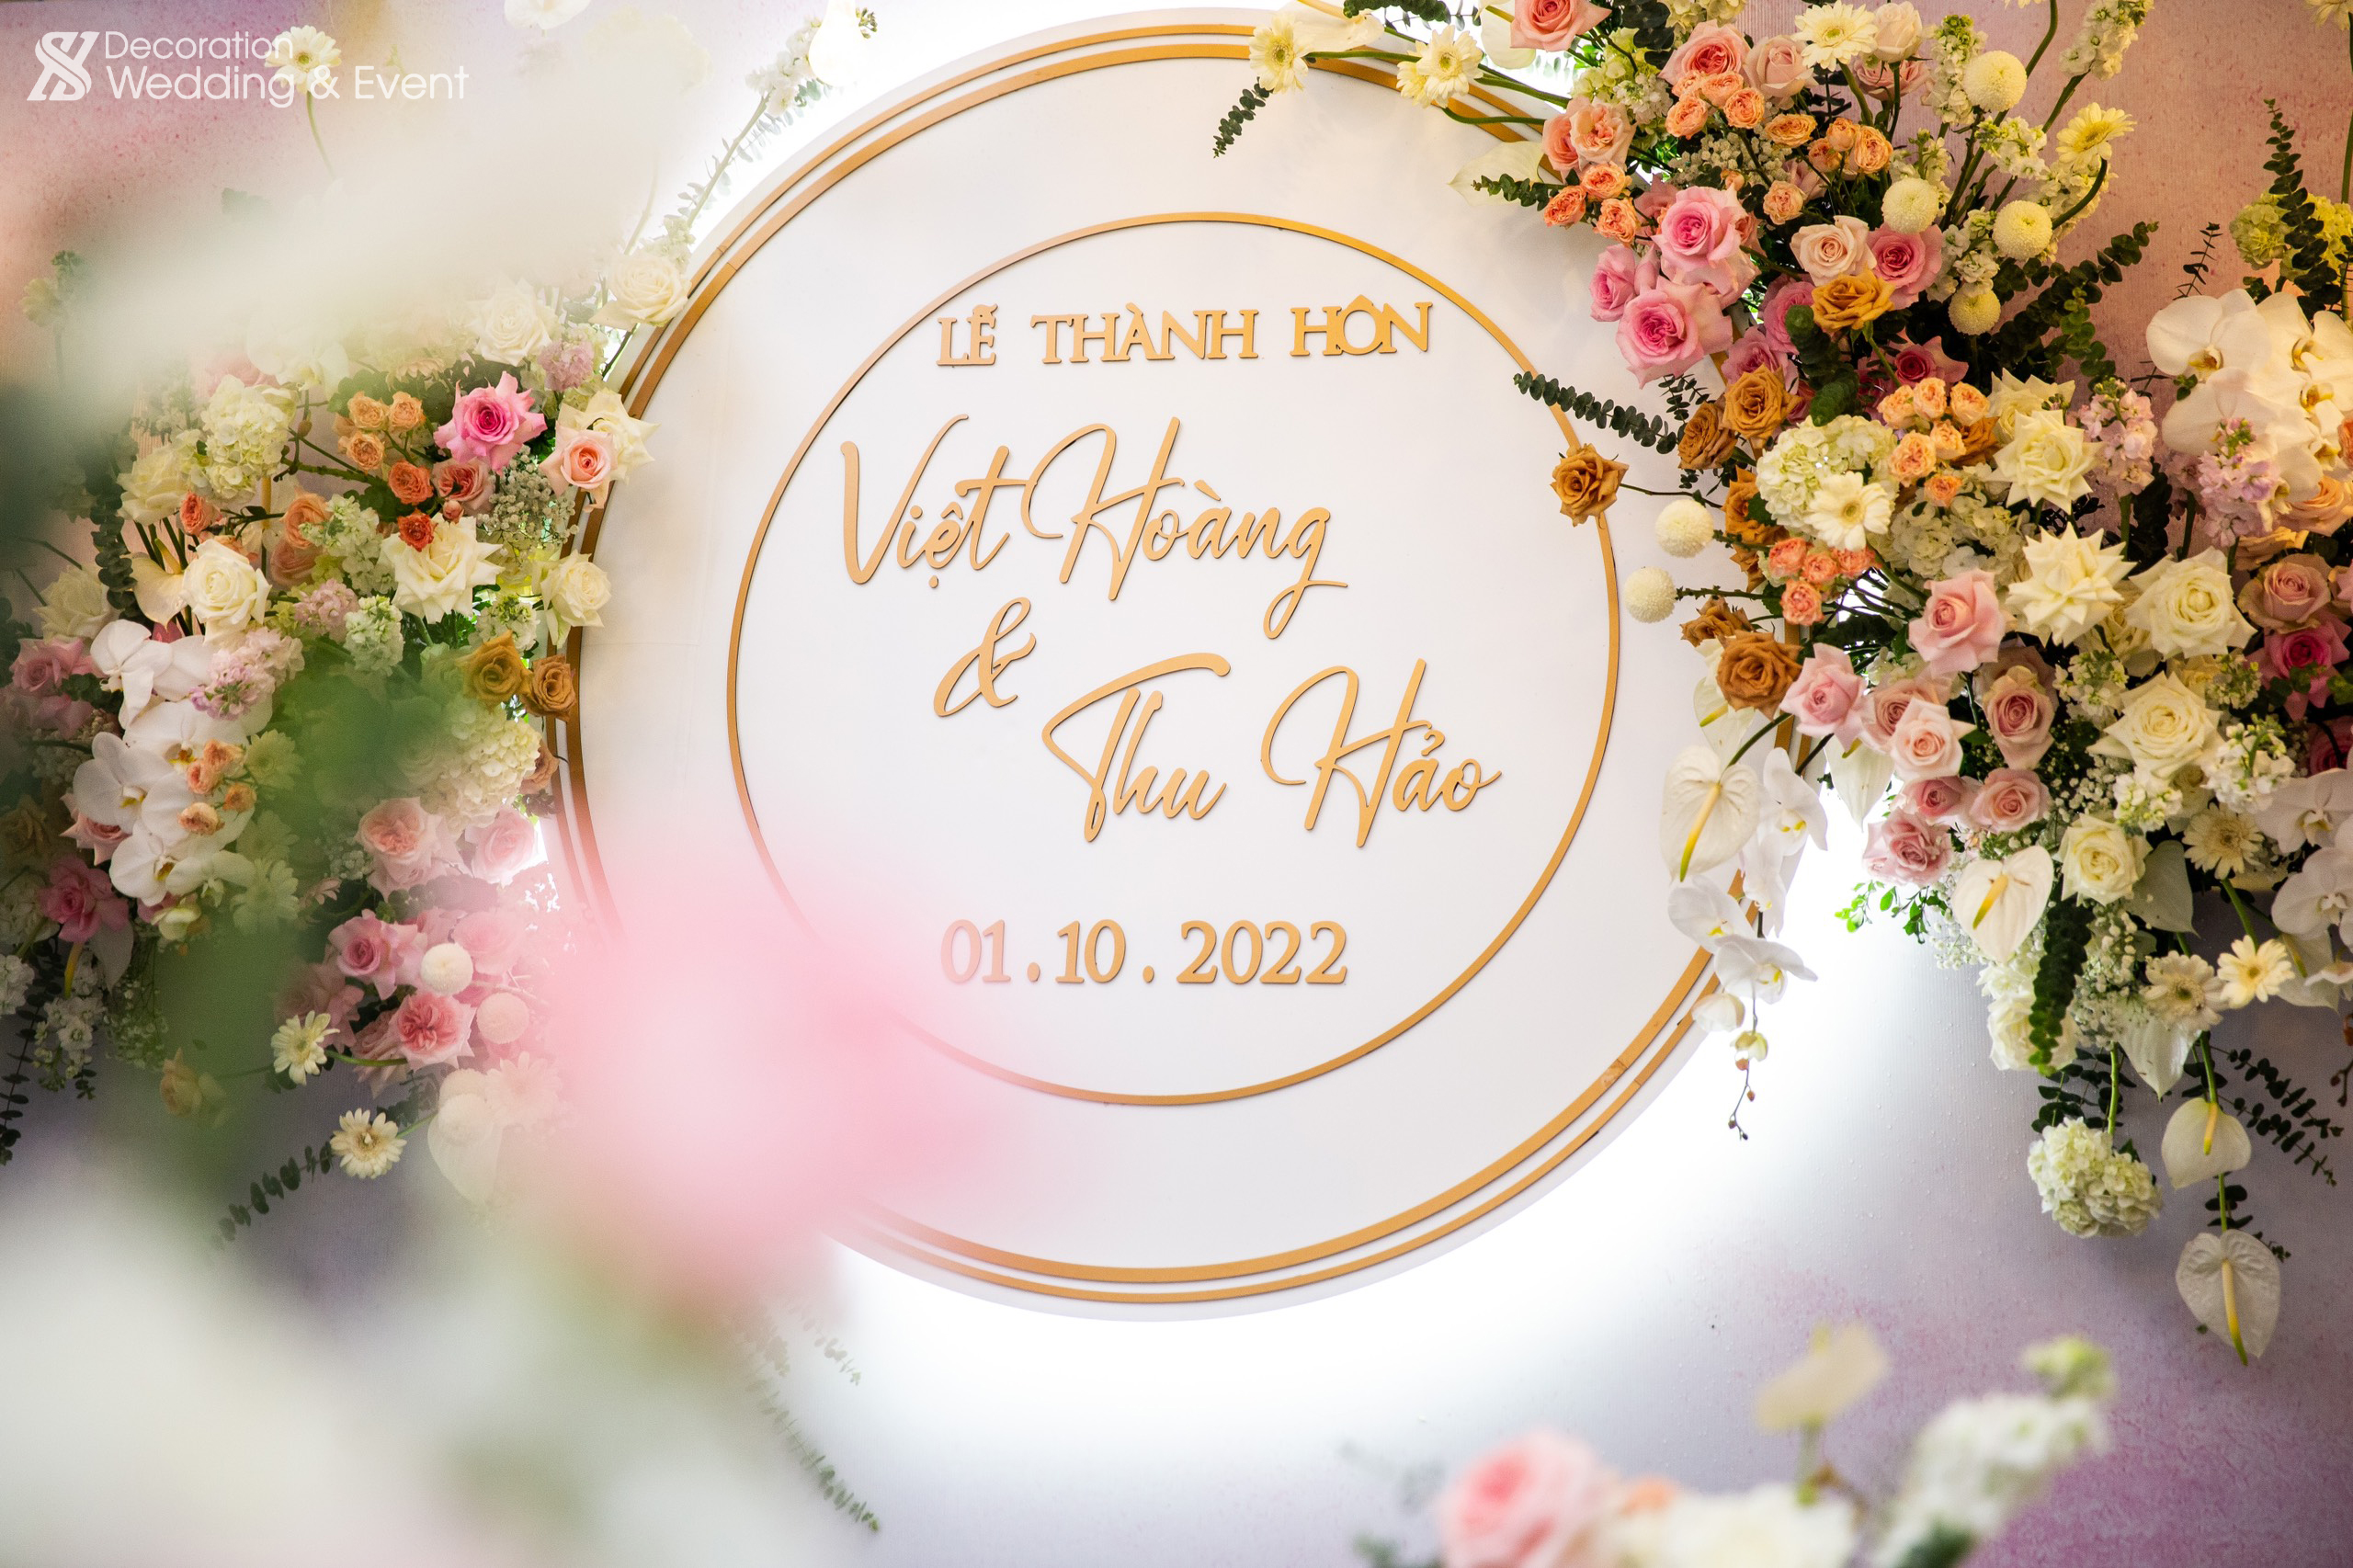 Lễ thành hôn Việt Hoàng - Thu Hảo